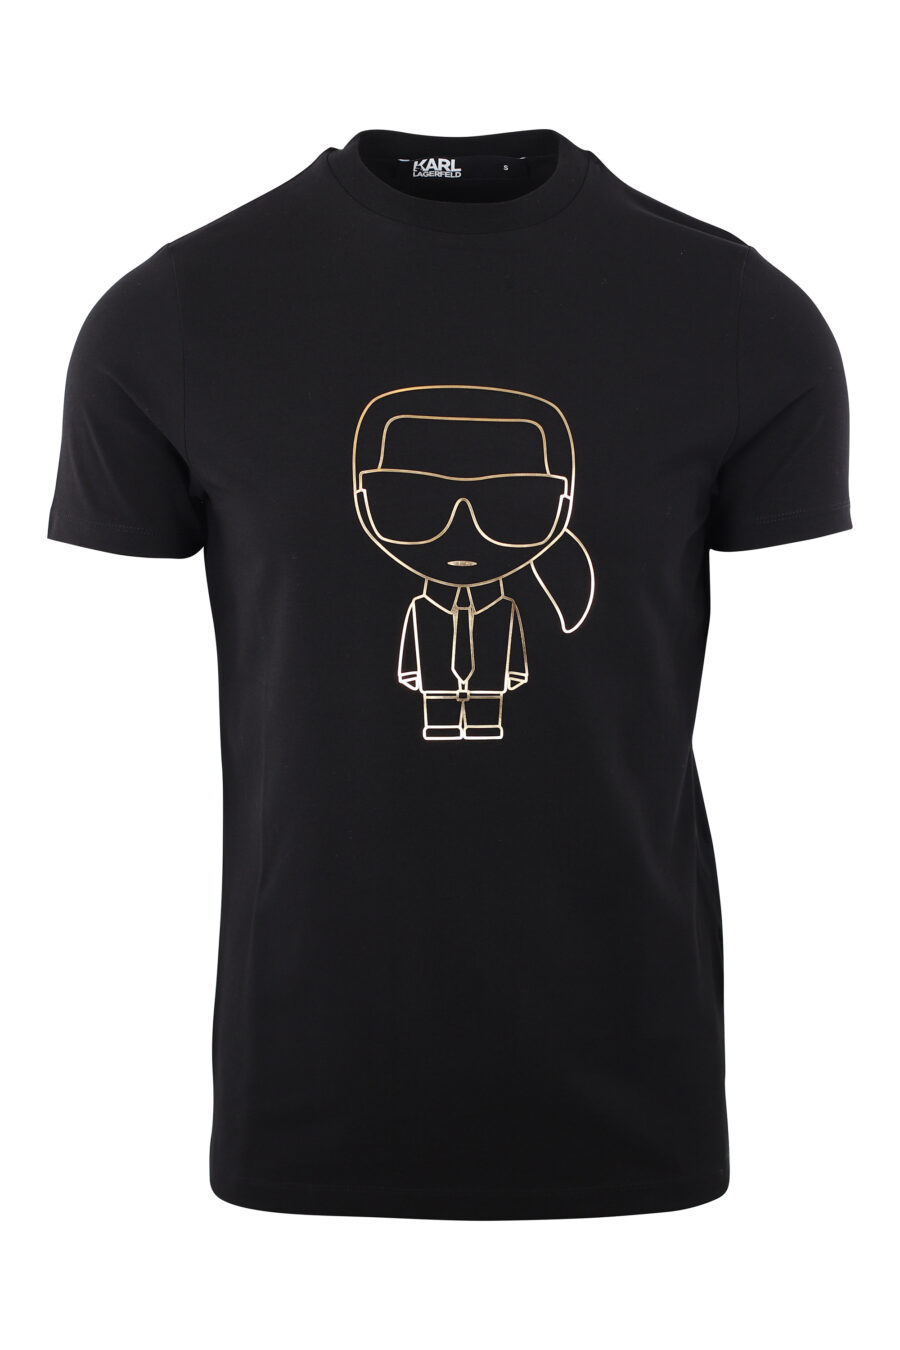 T-shirt preta com logótipo de silhueta dourada - IMG 1980